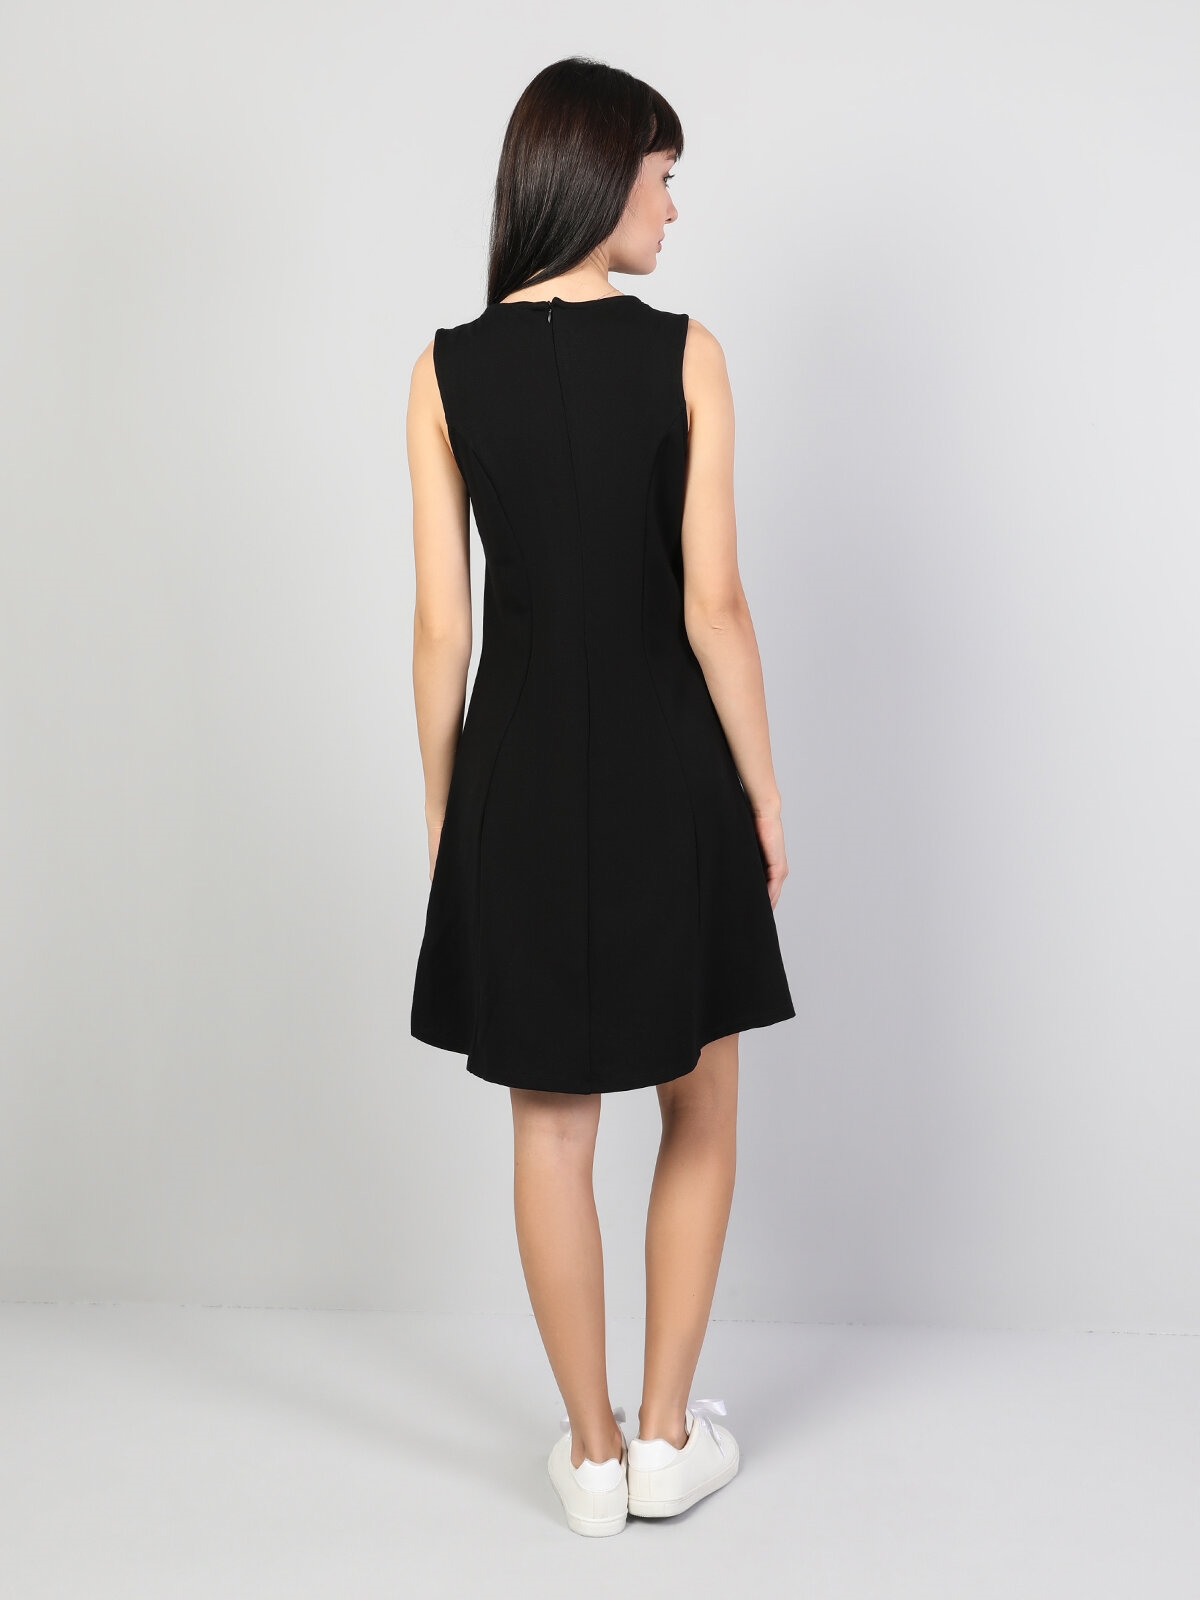 Показати інформацію про Сукня Жіноча Чорна Класичного Крою Cl1045078